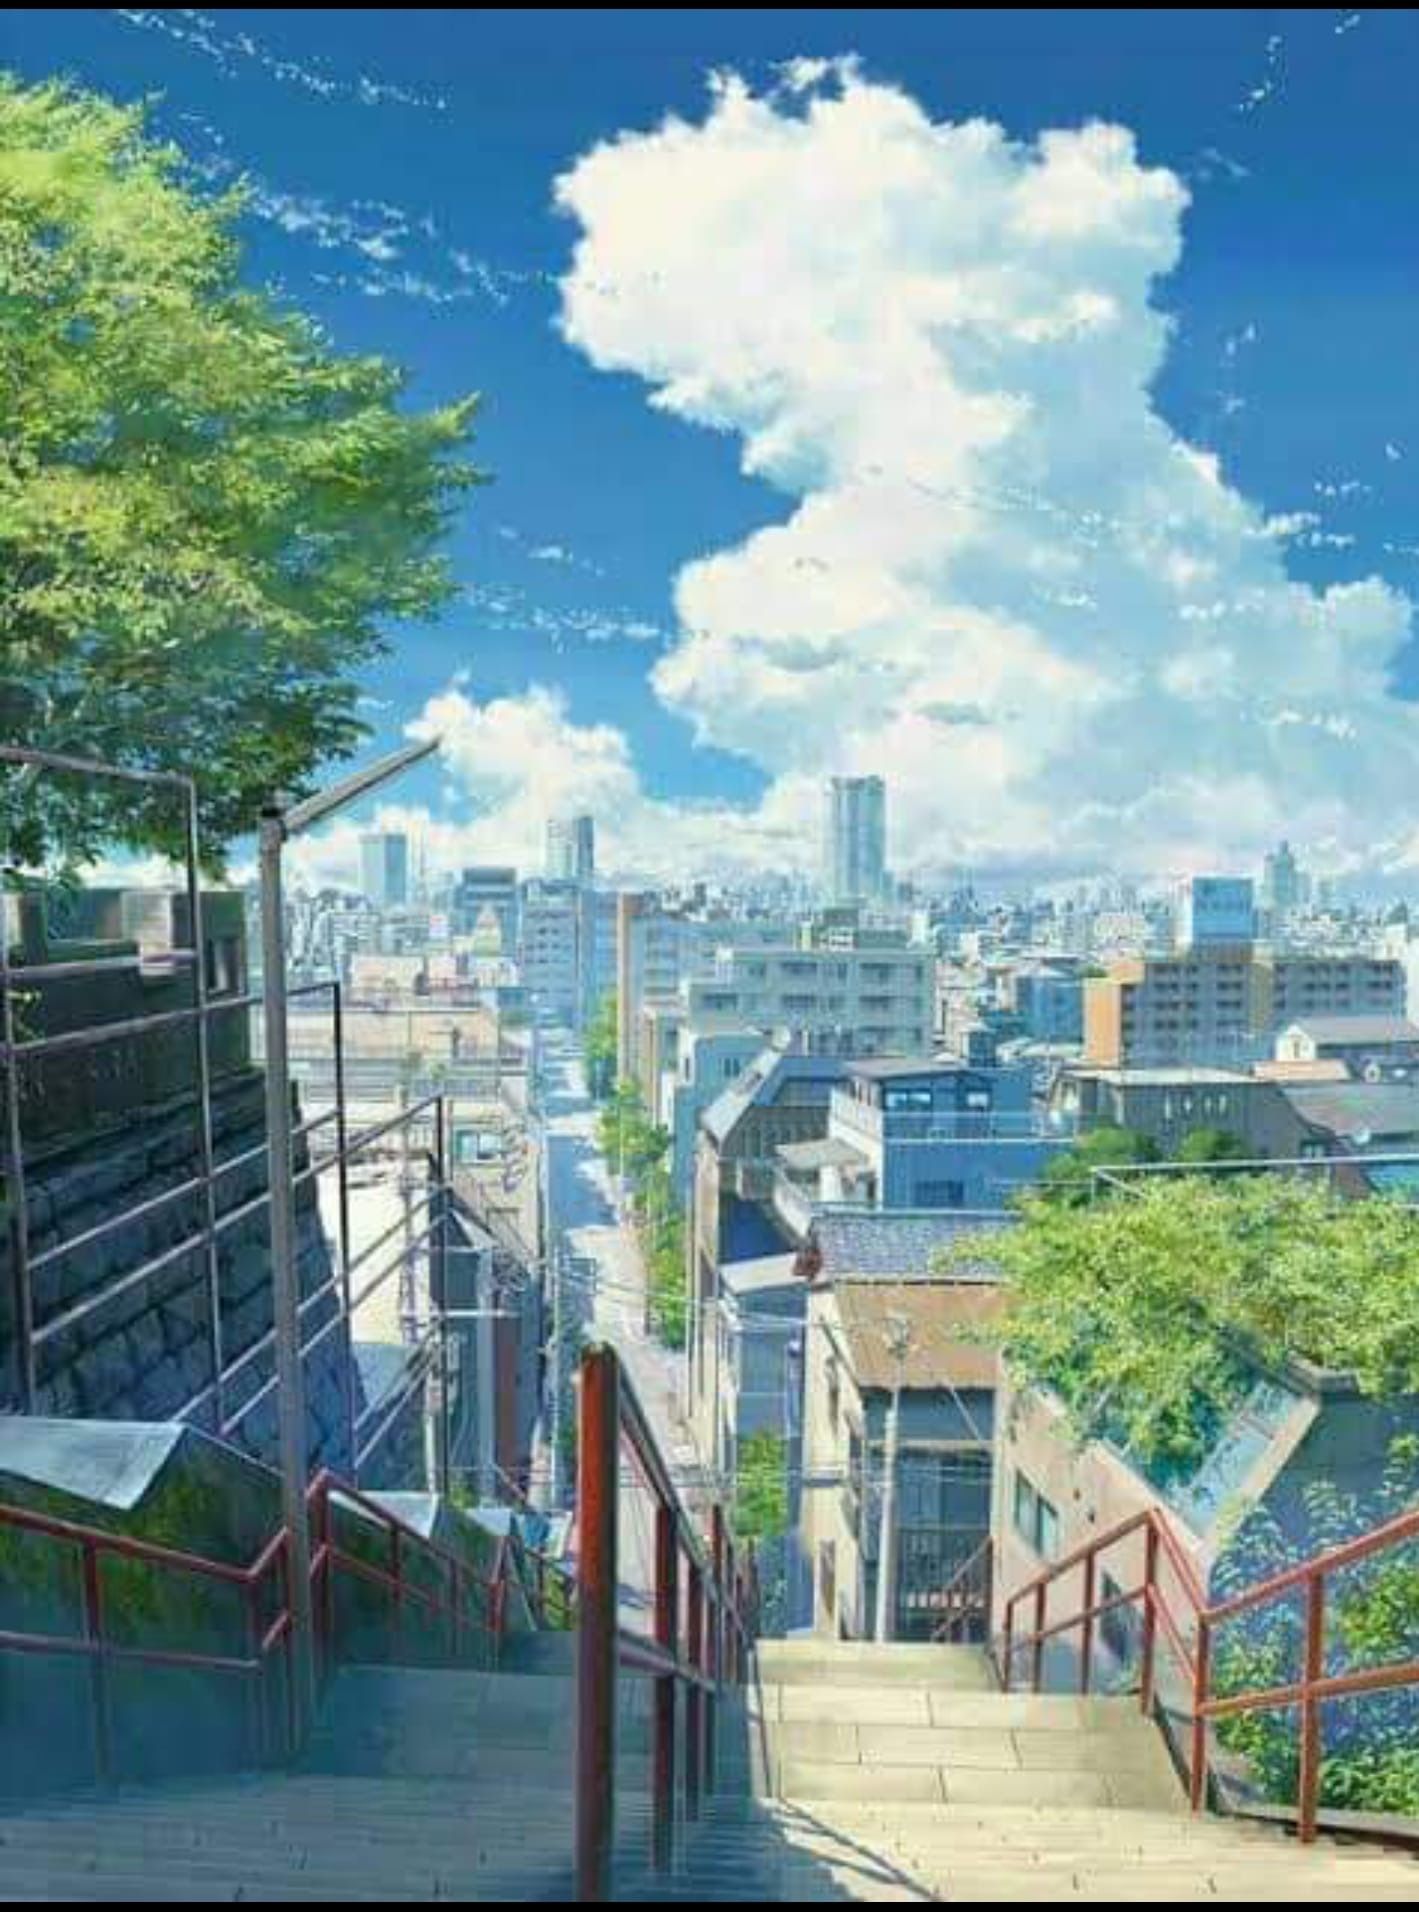 Studio Ghibli Phone Wallpaper 68 images